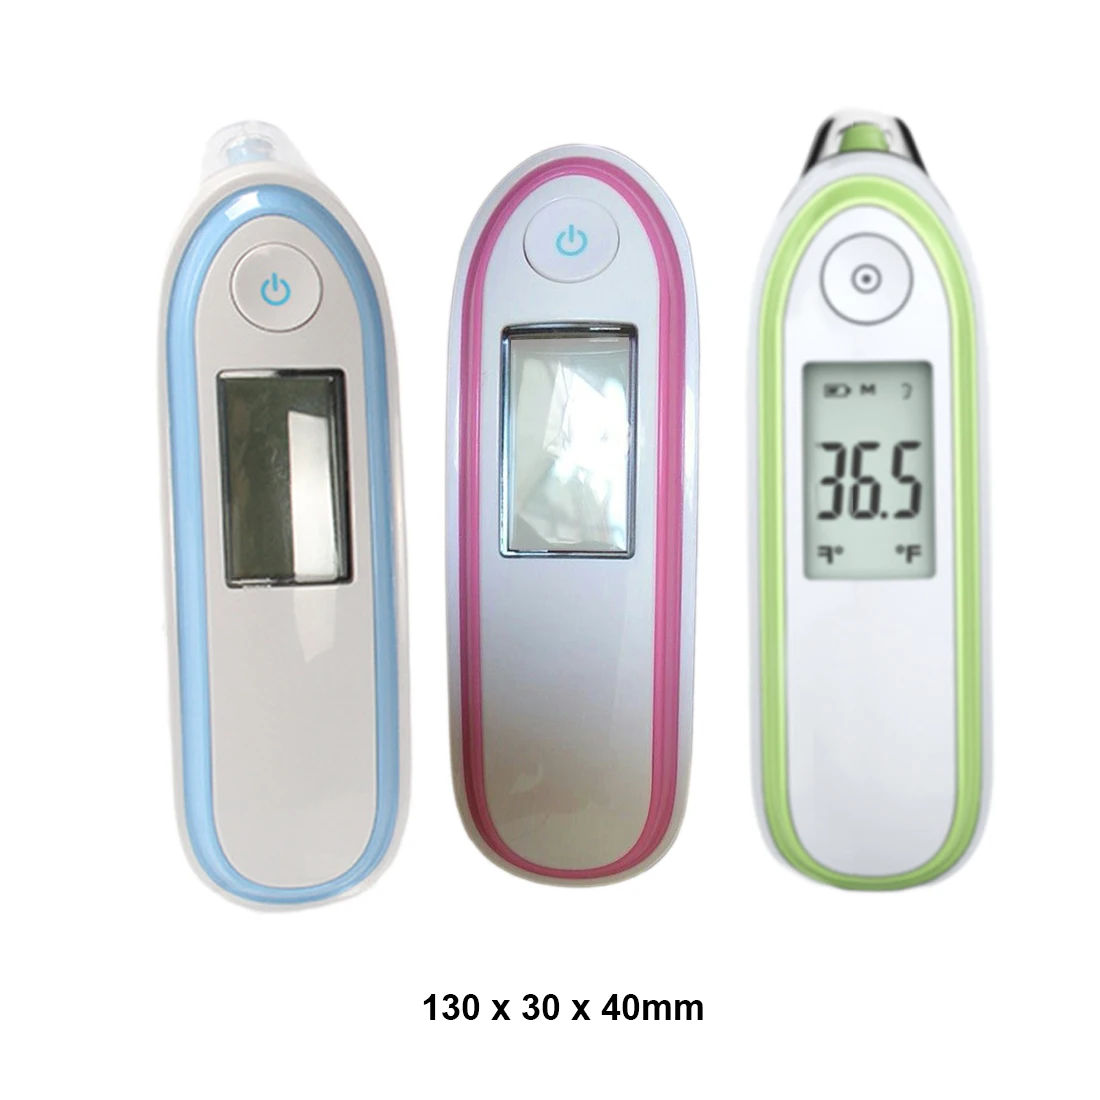 1 шт. Детские инфракрасные Электрический цифровой термометр пистолет Бесконтактный ИК лоб младенческой уха измерения температуры